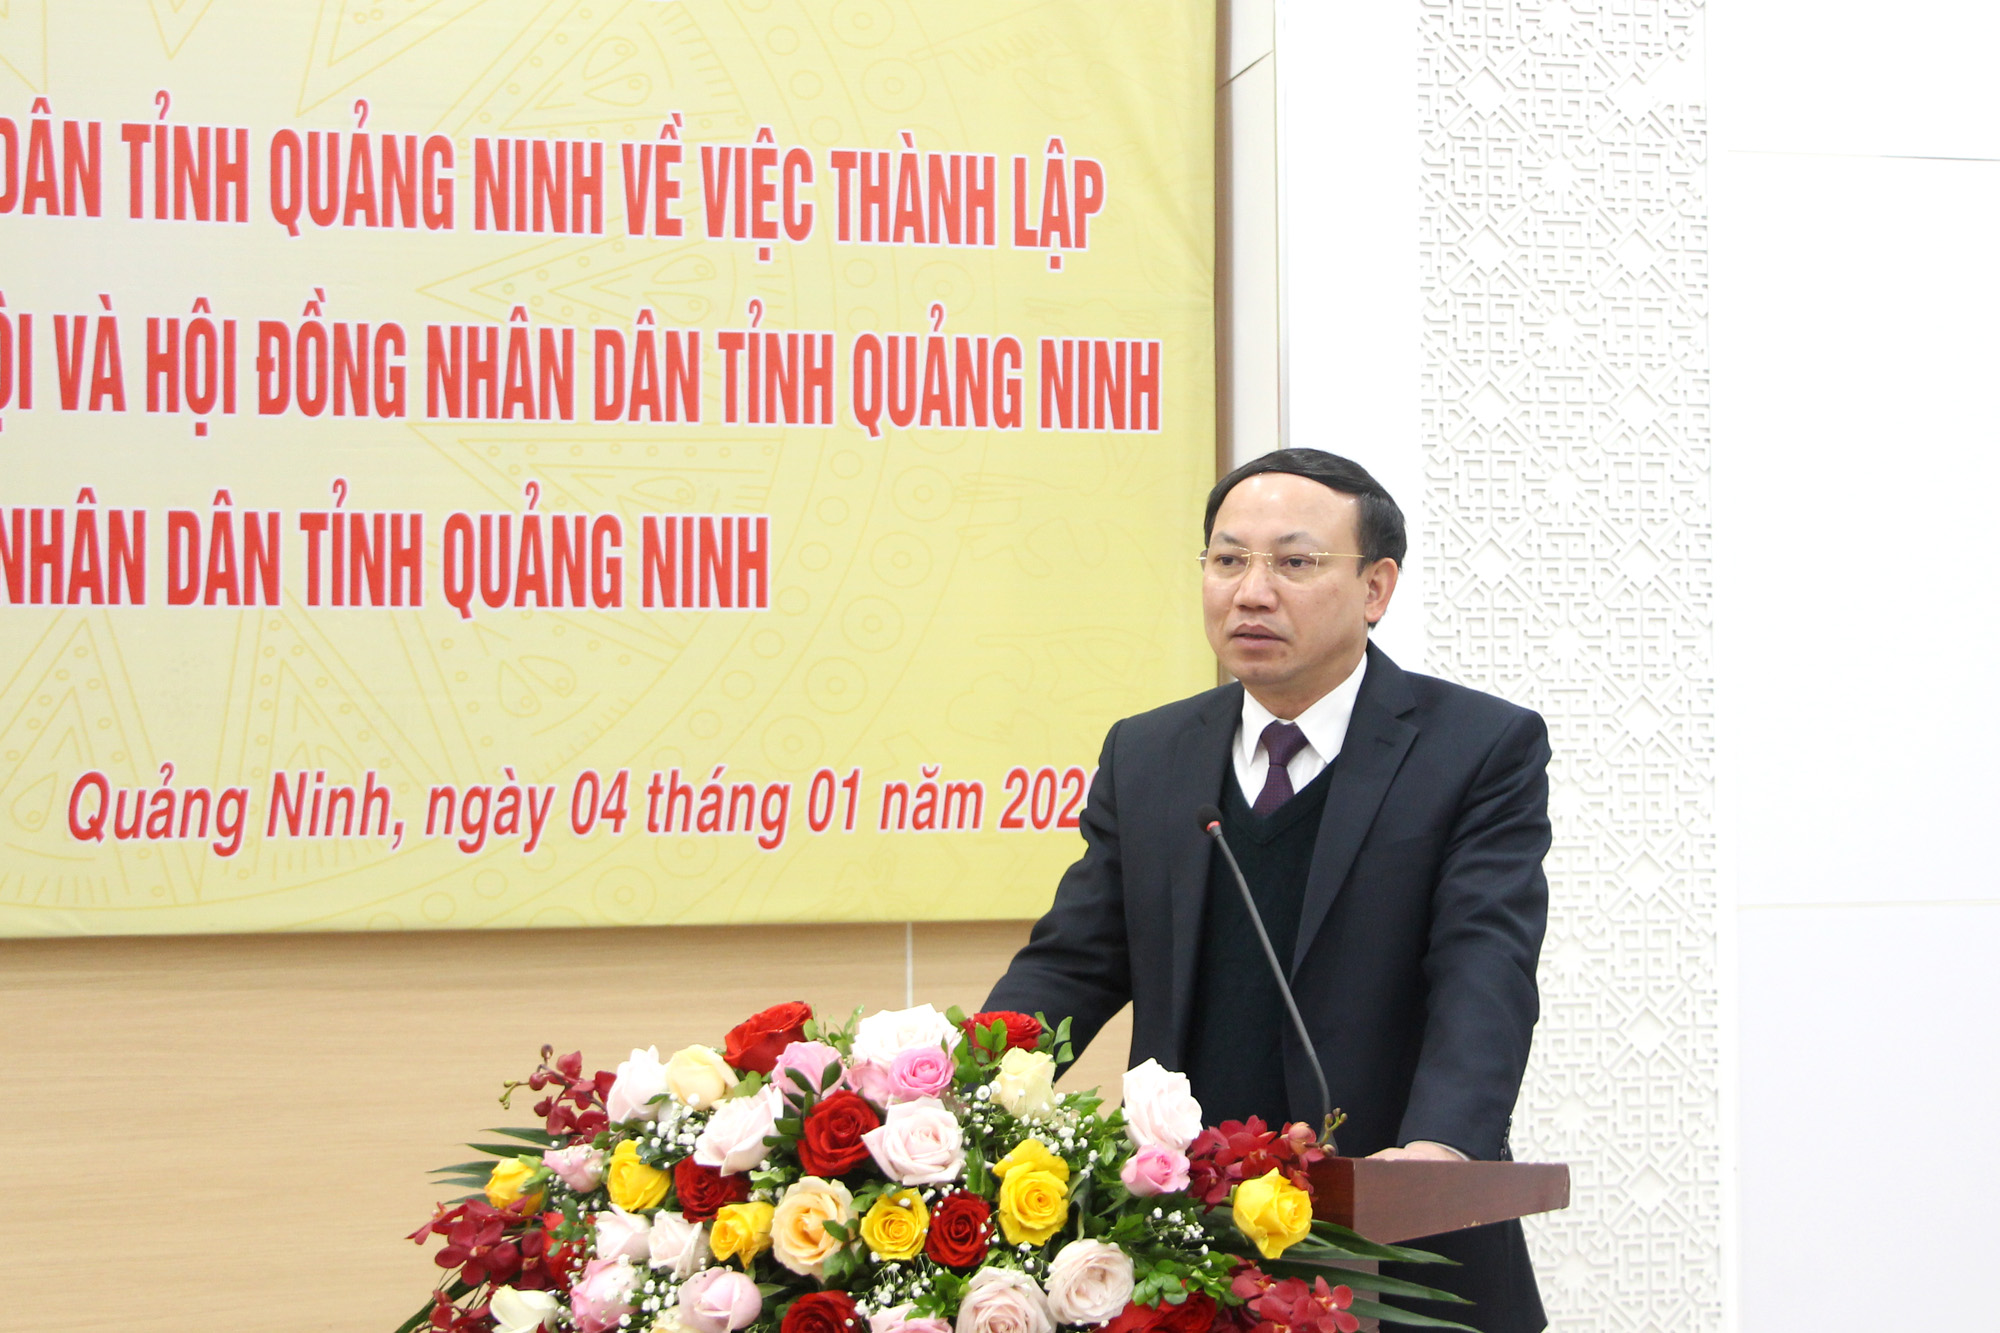 Đồng chí Nguyễn Xuân Ký, Bí thư Tỉnh ủy, Chủ tịch HĐND tỉnh phát biểu chỉ đạo tại buổi lễ.